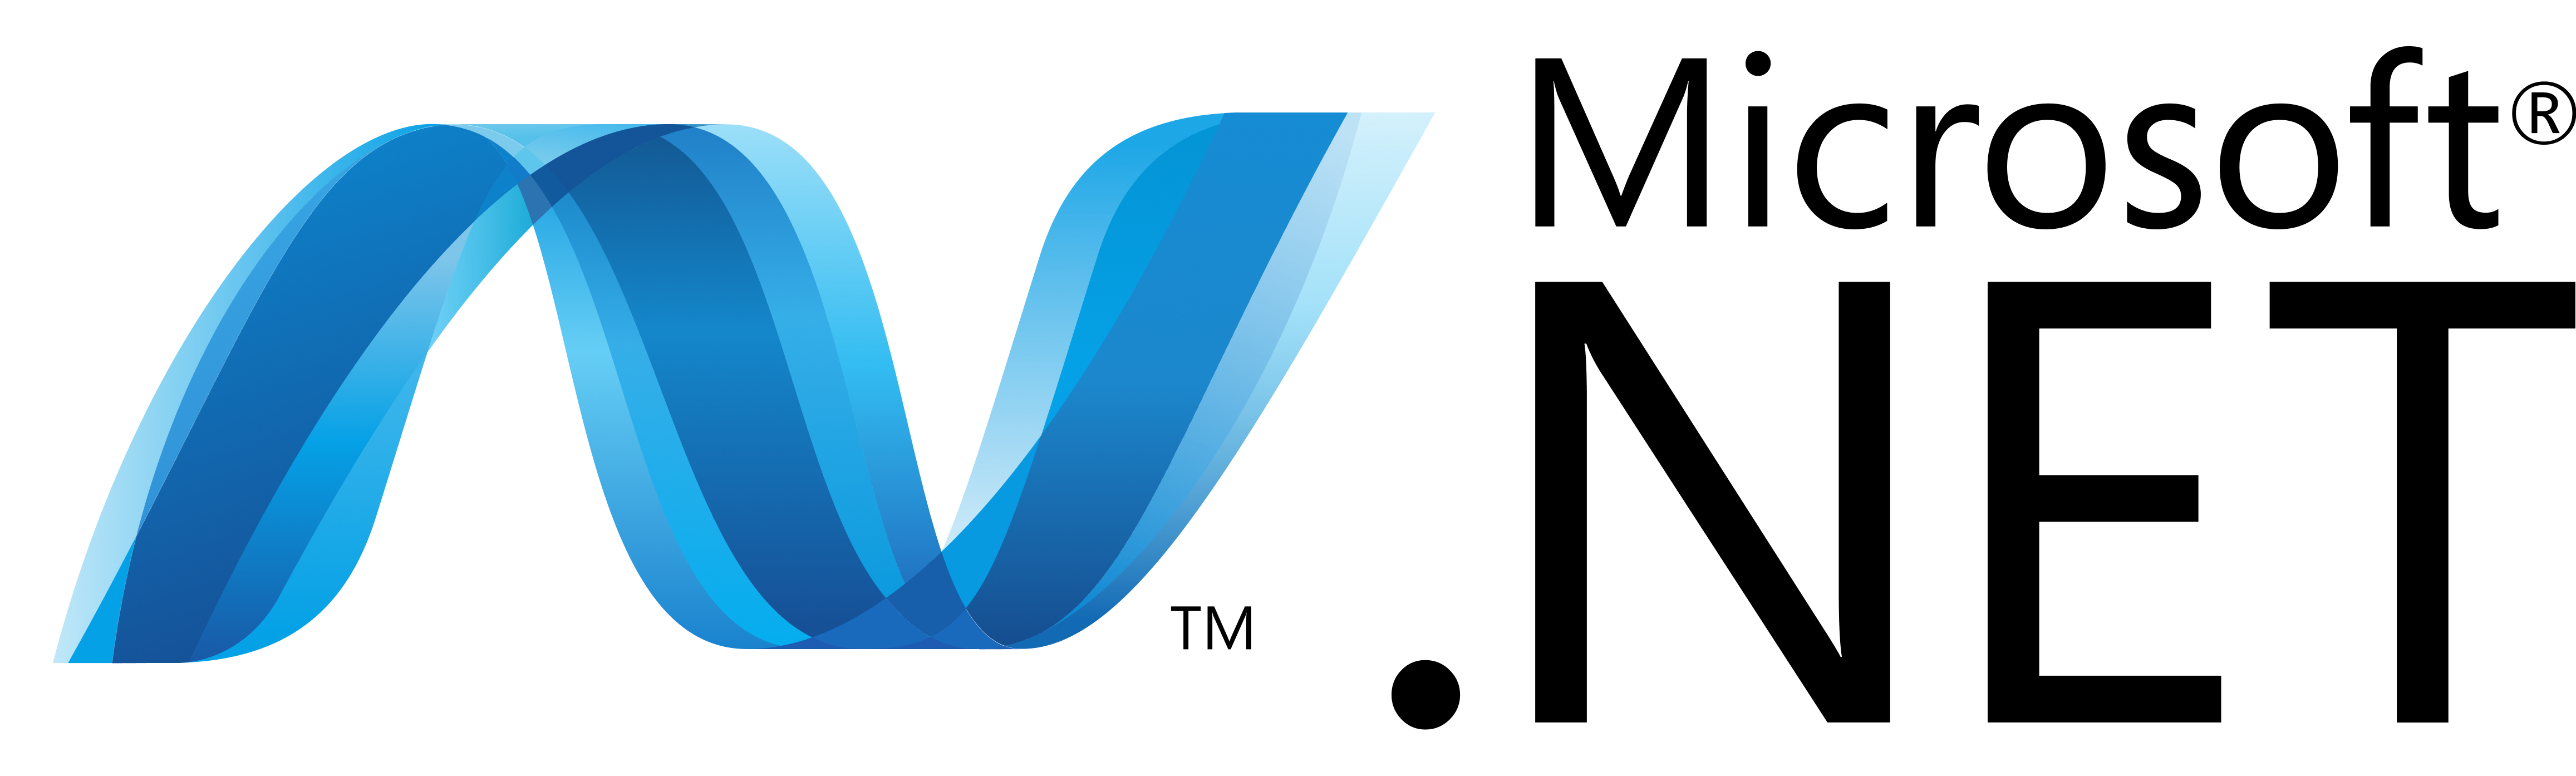 Dotnet client logo